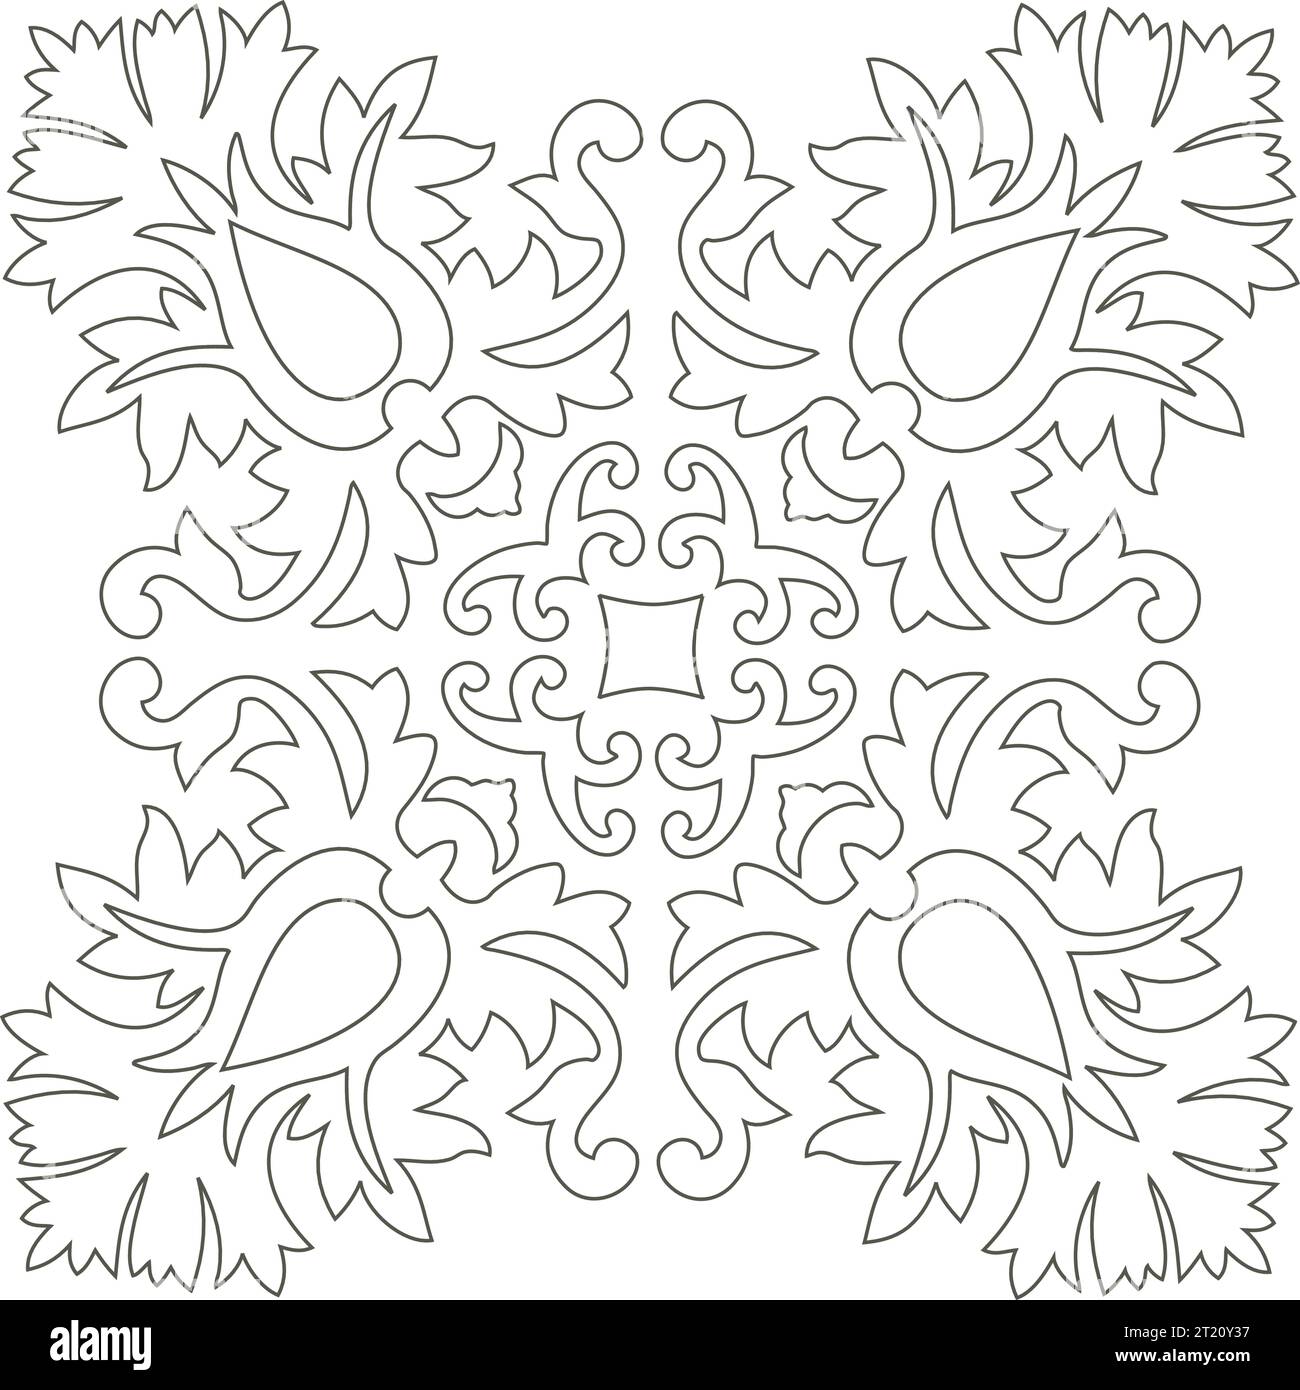 Single Mandala Schwarz und weiß - Blume Natur, Laub, Blätter, Energie Rad Kreis Komplex Symbol abstrakte Dekoration Färbung Seite Stock Vektor